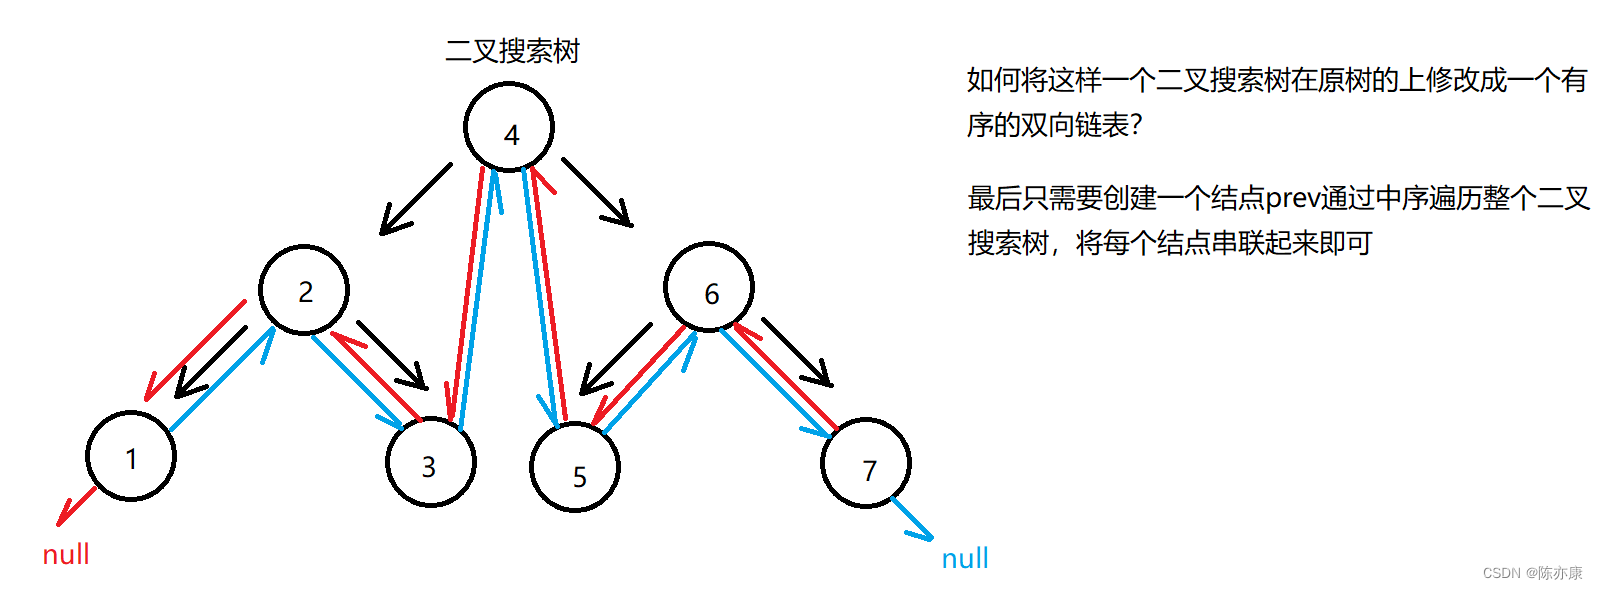 如何将二叉搜索树转化为一个有序的双向链表（原树上修改）